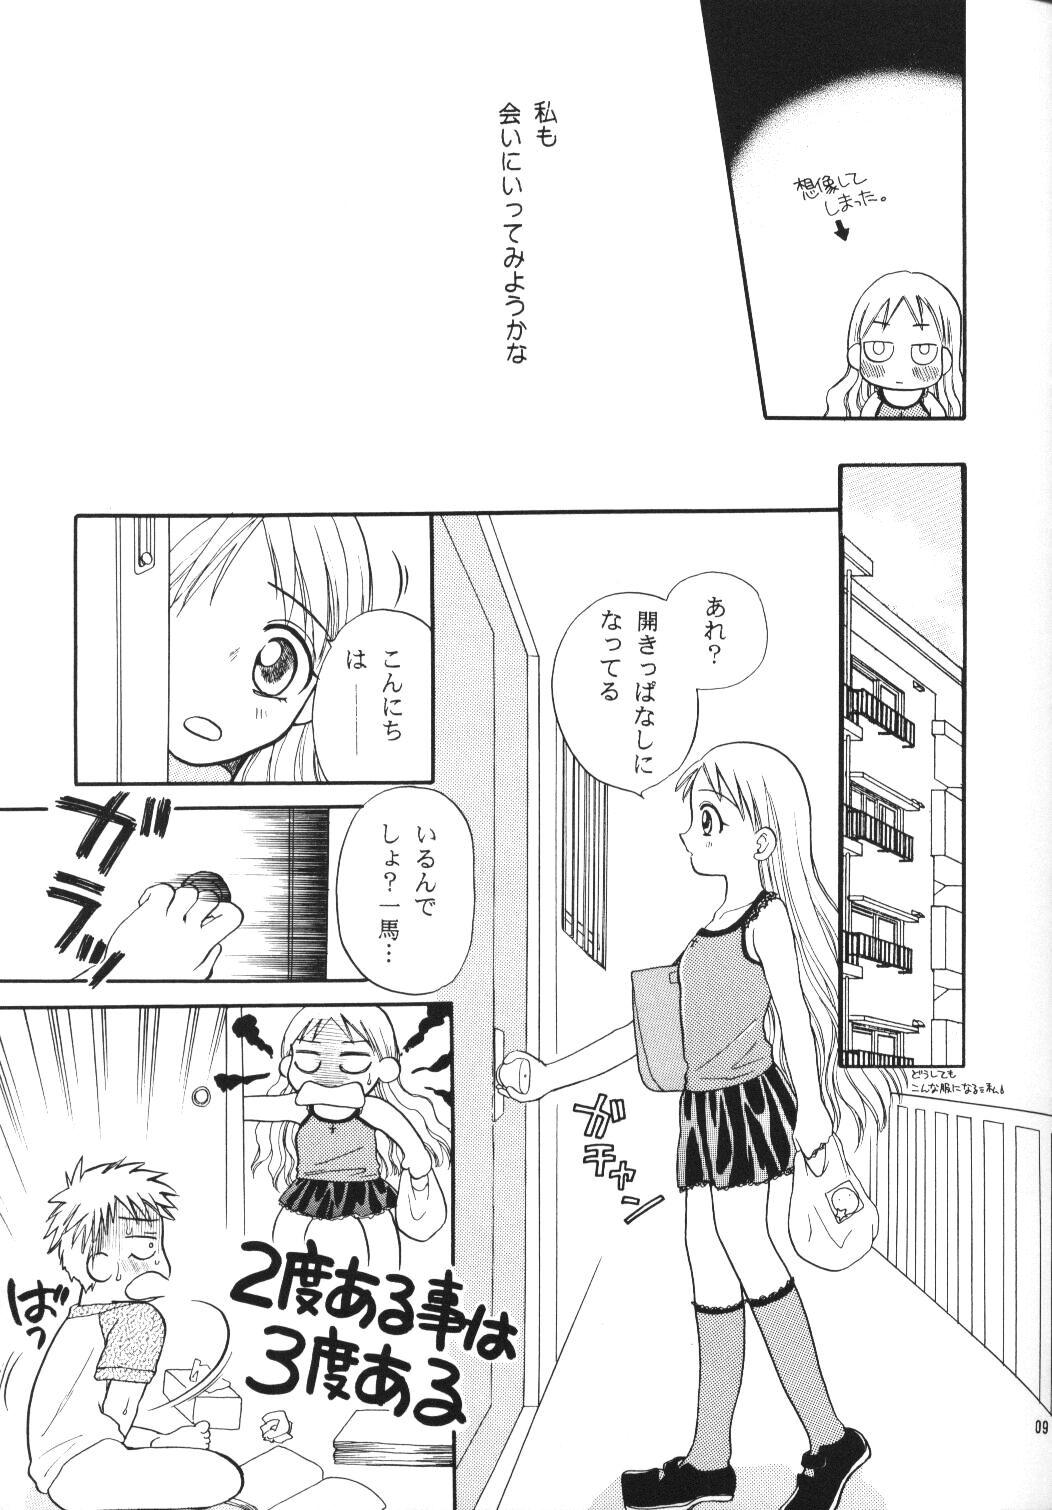 Facials Tenshi no Girigiri - Kare kano Uniform - Page 8